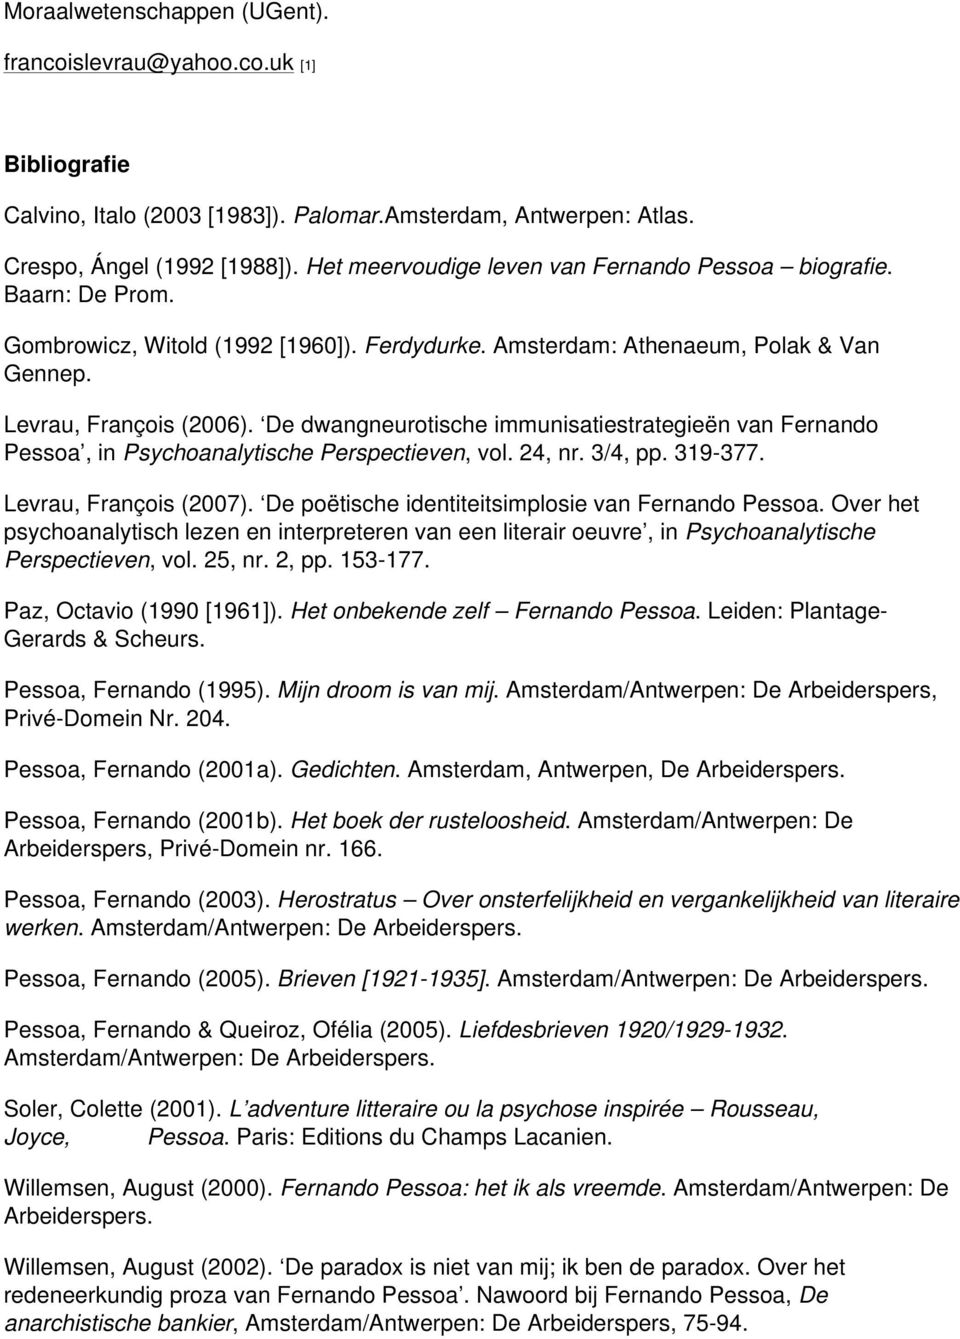 De dwangneurotische immunisatiestrategieën van Fernando Pessoa, in Psychoanalytische Perspectieven, vol. 24, nr. 3/4, pp. 319-377. Levrau, François (2007).